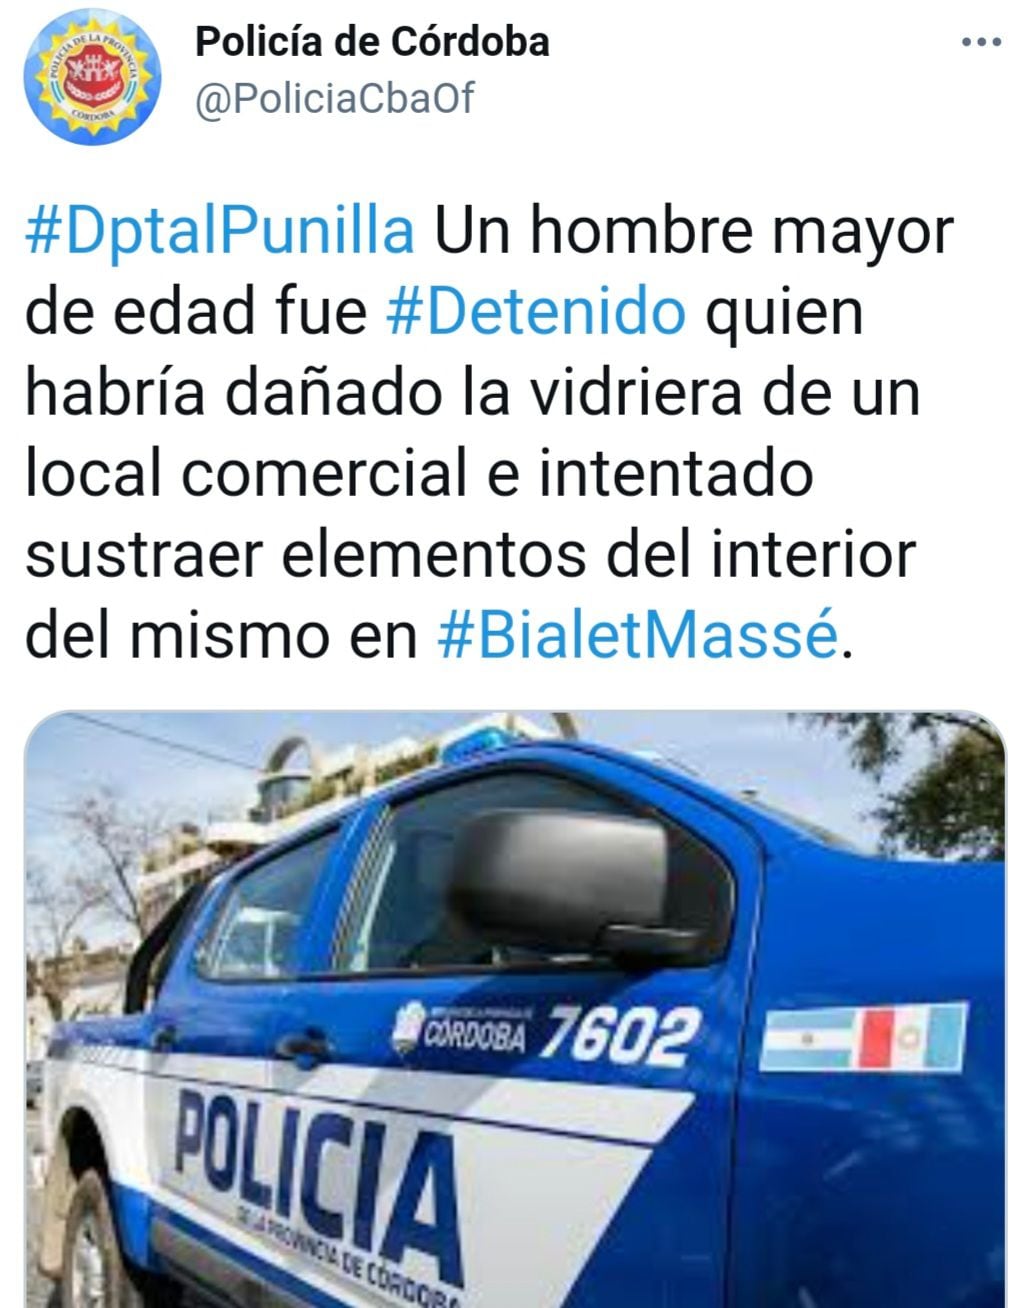 Detenido "por delito" en Bialet Massé.